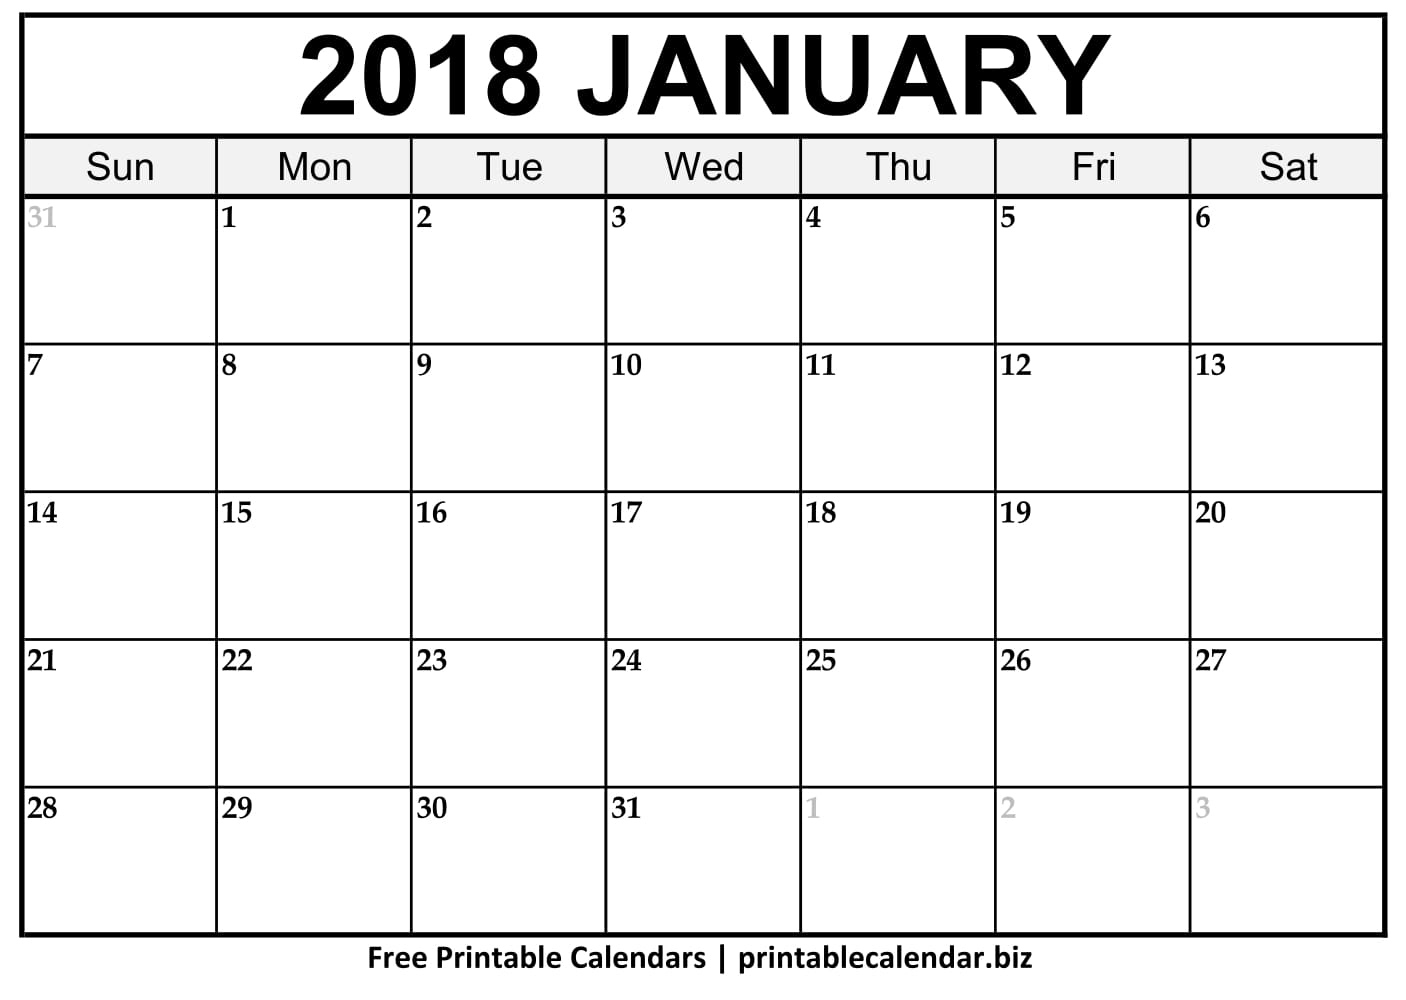 2019 Printable Calendar Templates - Printablecalendar.biz Printable Calendar That You Can Type On